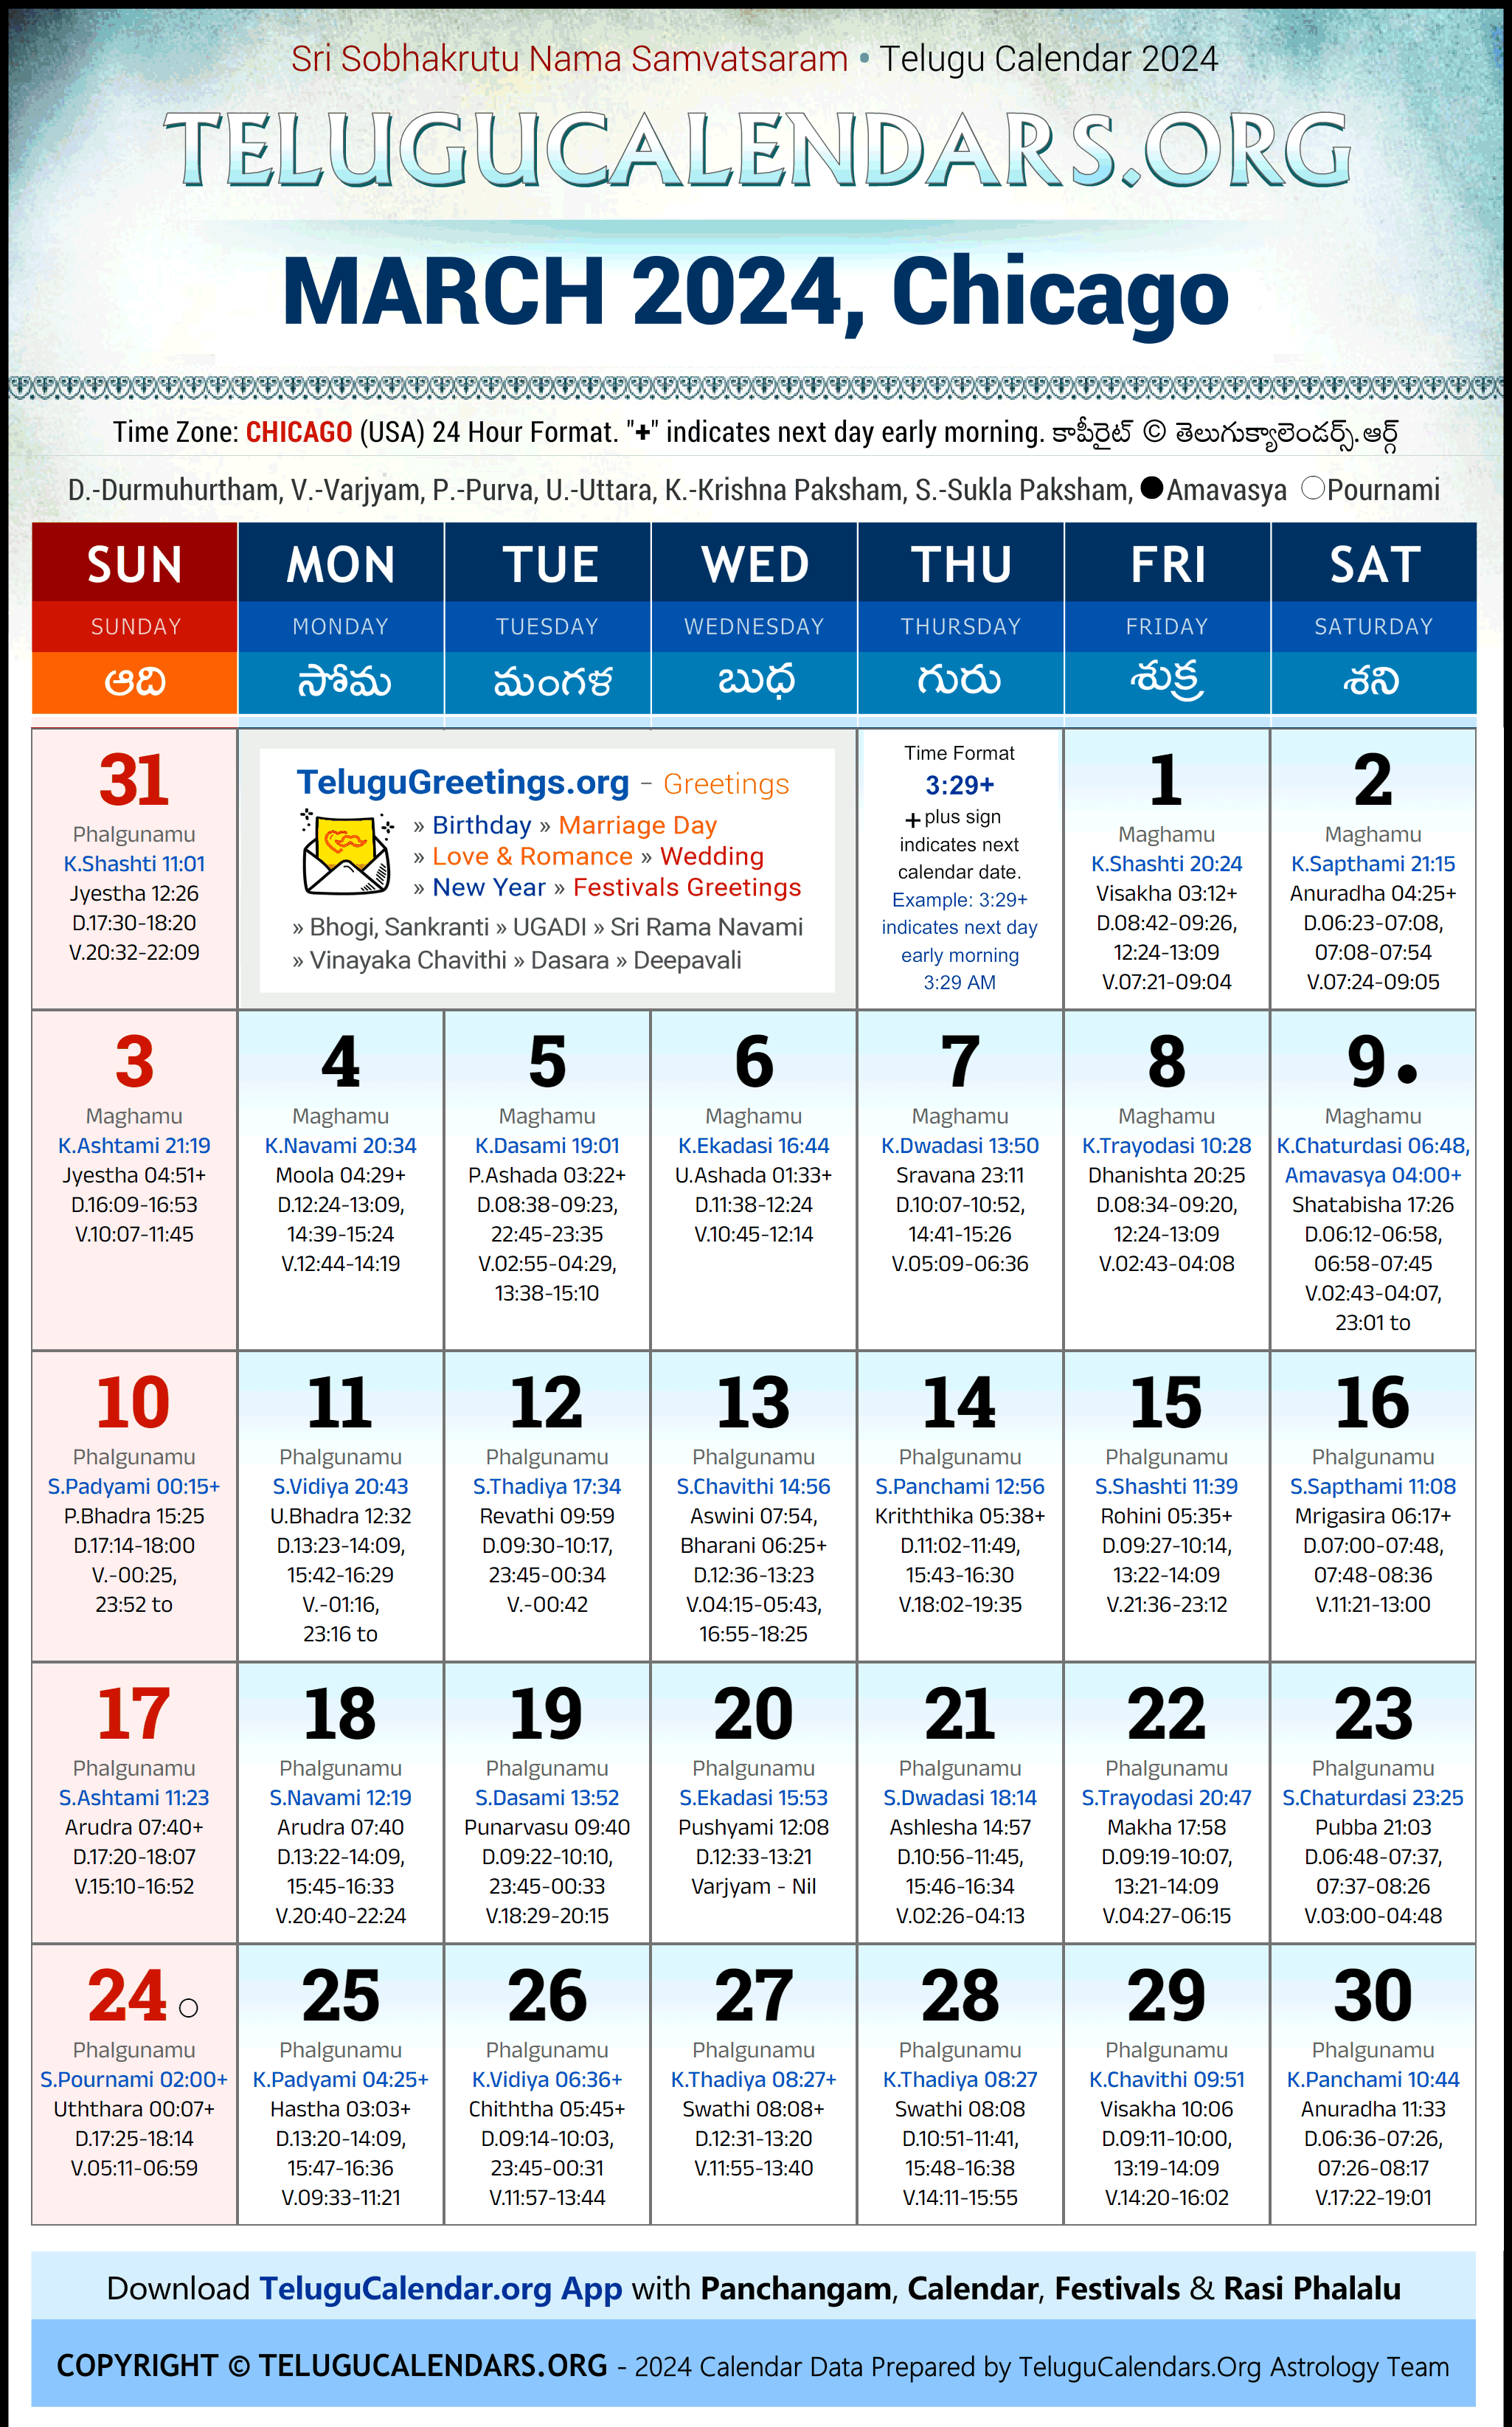 Telugu Calendar 2024 March Festivals for Chicago